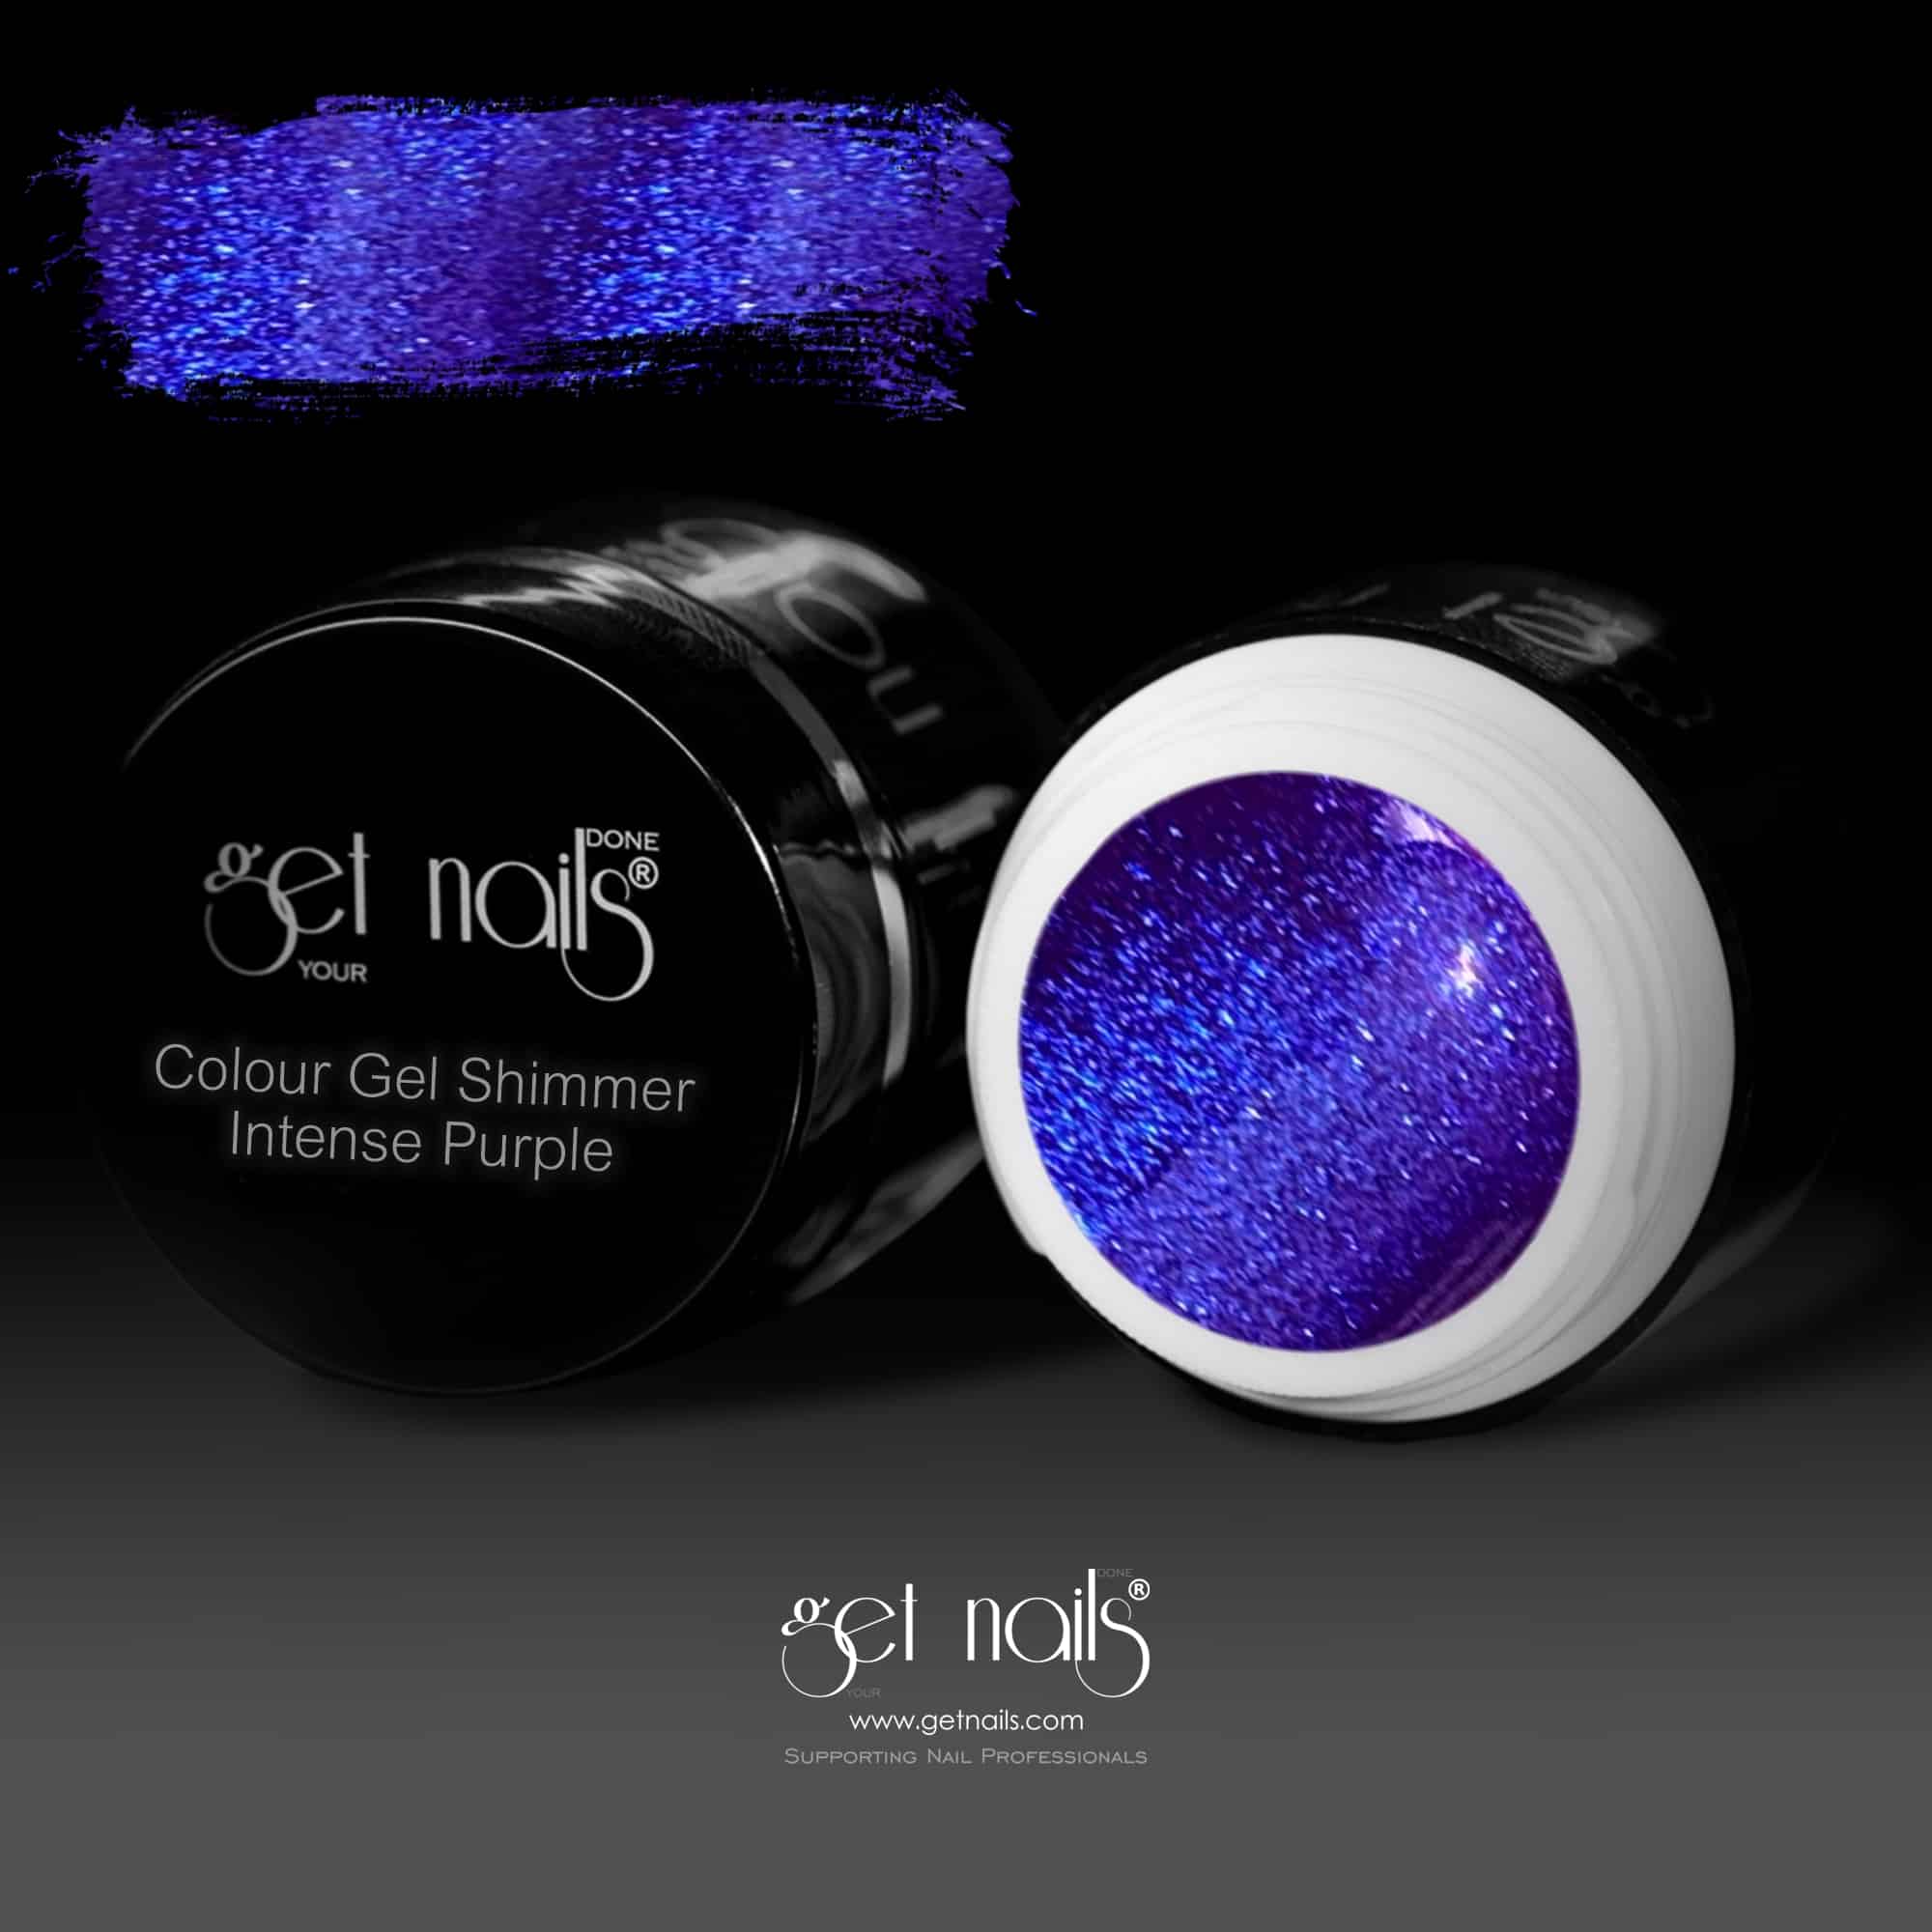 Get Nails Austria - Color Gel Shimmer Intense Purple 5g